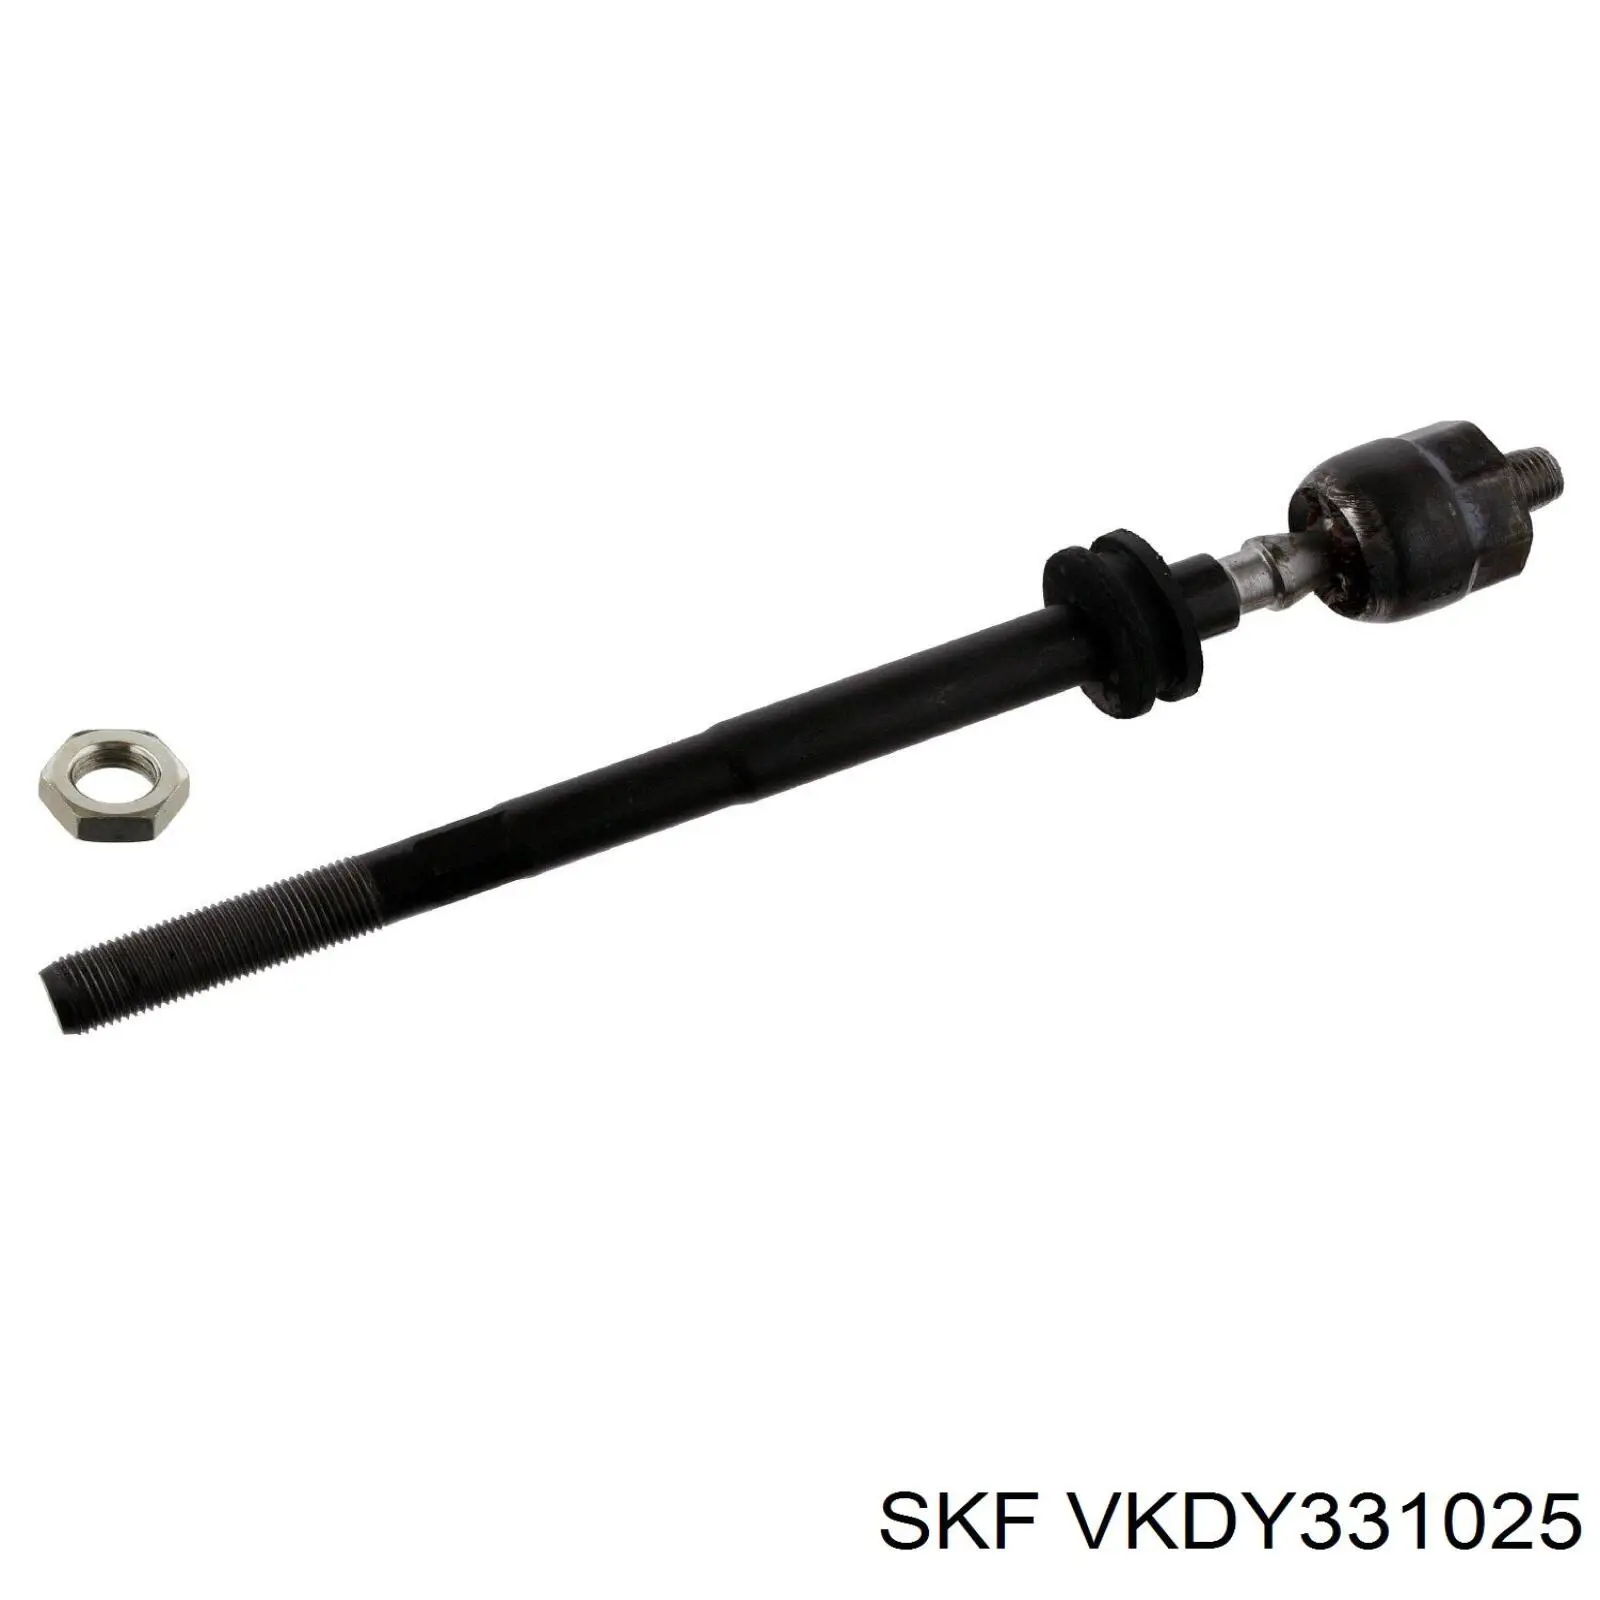 VKDY 331025 SKF barra de acoplamiento completa izquierda